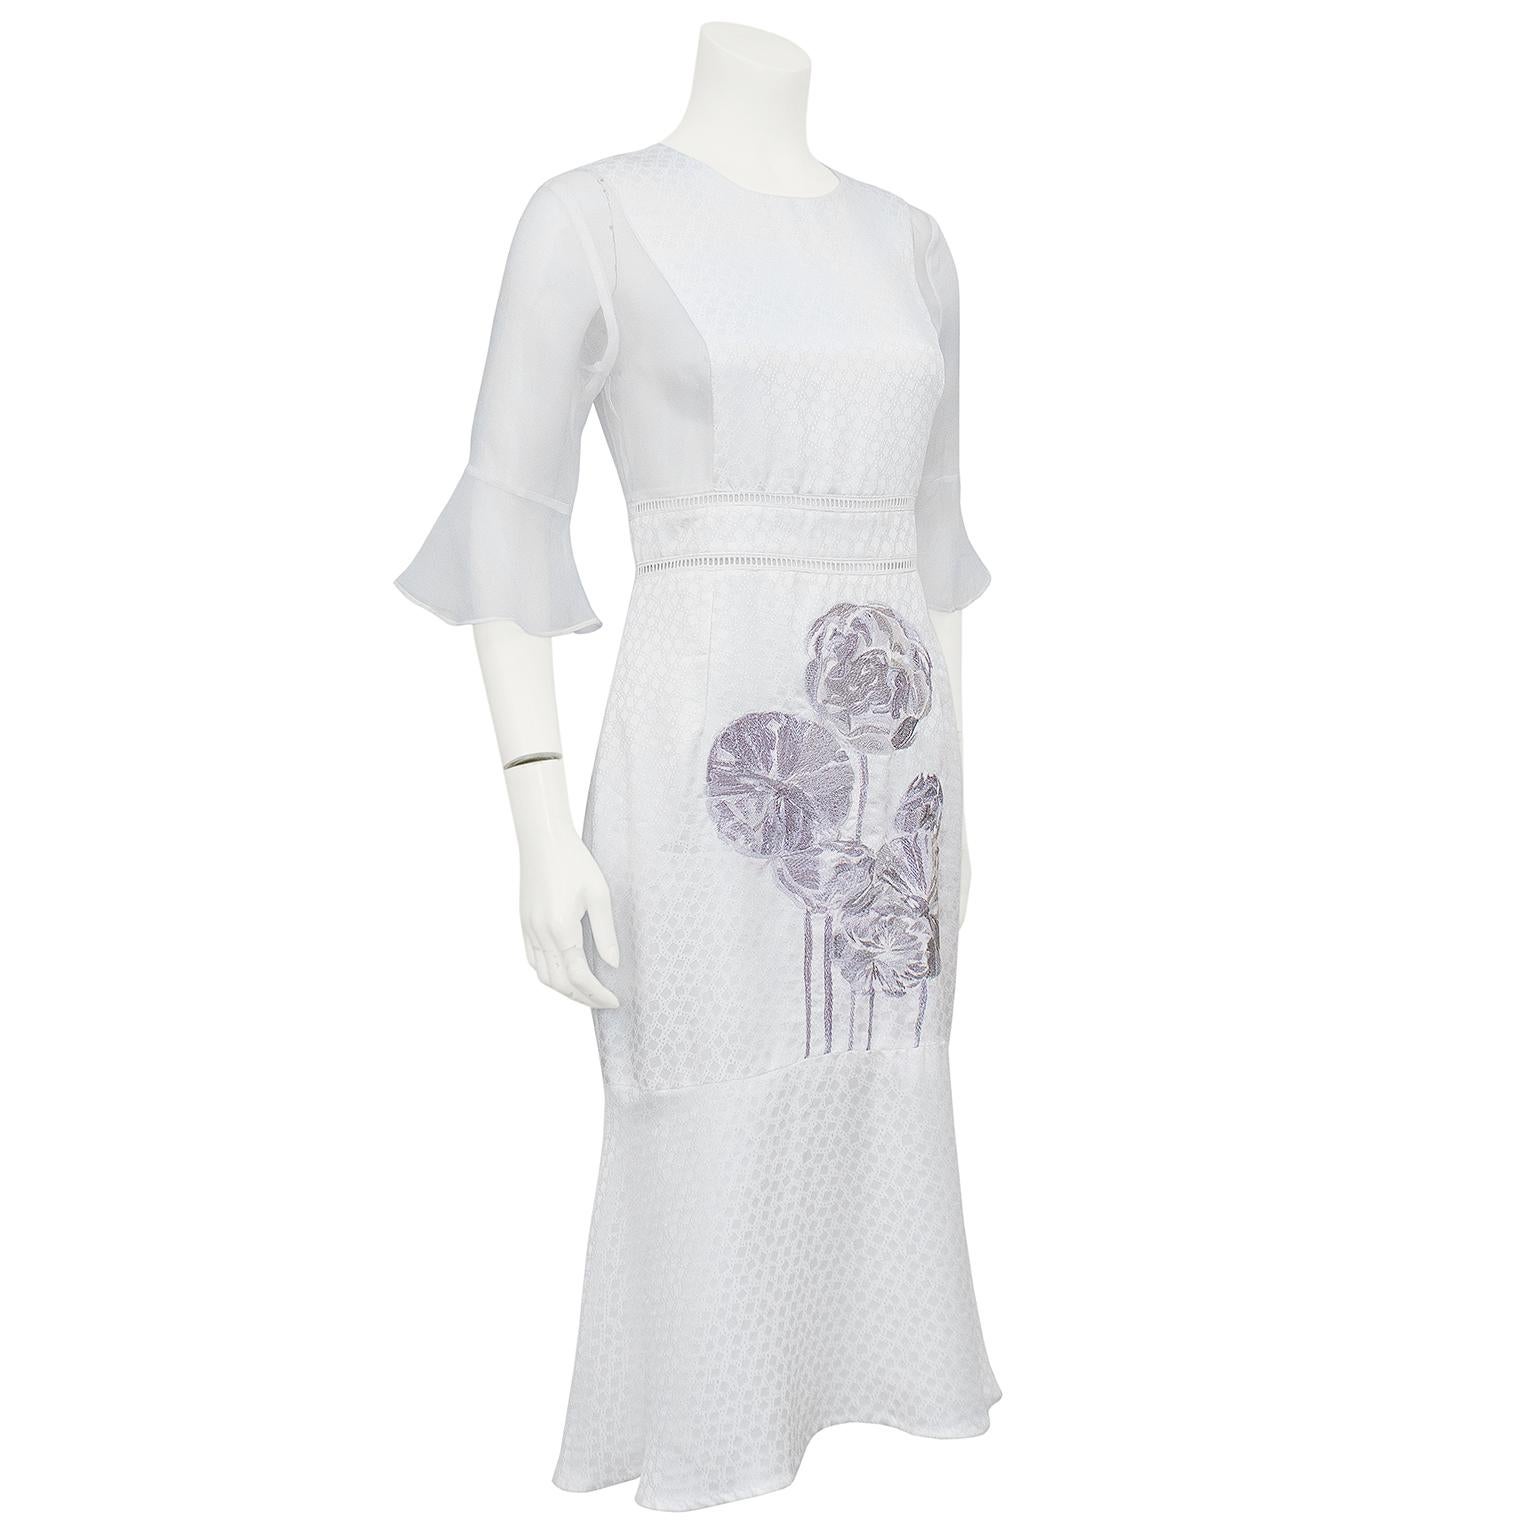 Schönes Kleid aus der Alexander McQueen Frühjahr/Sommer 2015 Kollektion von Sarah Burton. Der cremeweiße Seidenjacquard ist mit einem kleinen Quadrat- und Punktmuster versehen. Die Ärmel und die Seiten des Körpers sind aus durchsichtigem